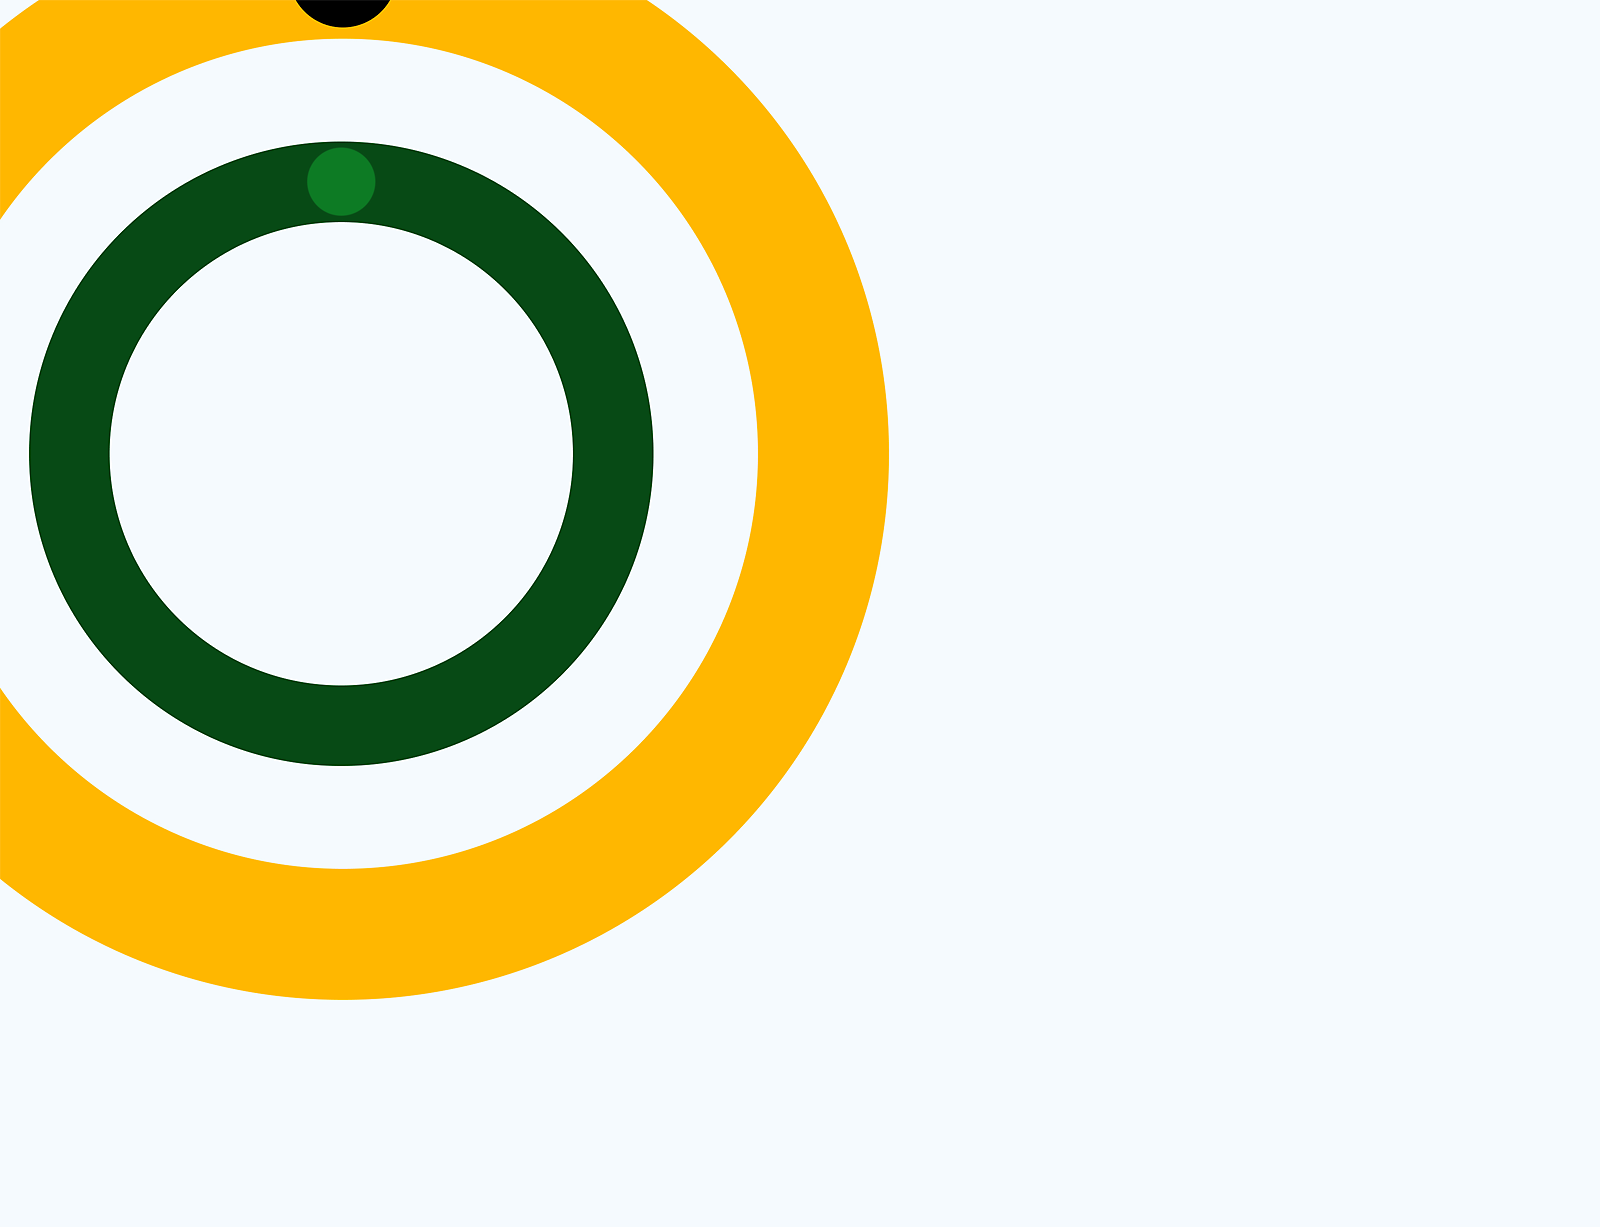 Gráfico abstrato de círculos concêntricos em verde, amarelo e branco sobre um fundo cinzento.